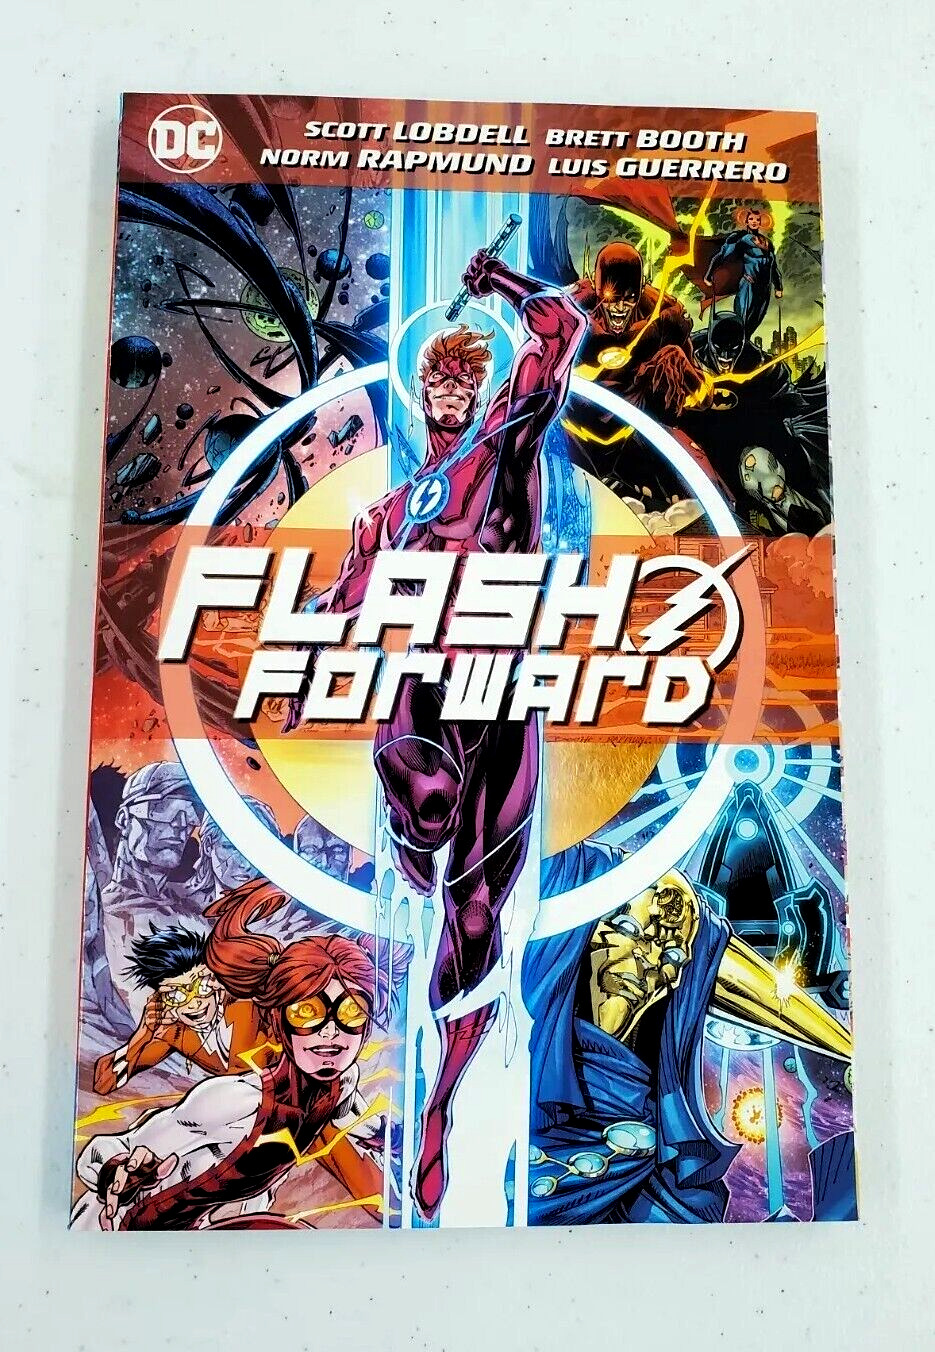 DC Comics - Flash Forward TPB by Scott Lobdell